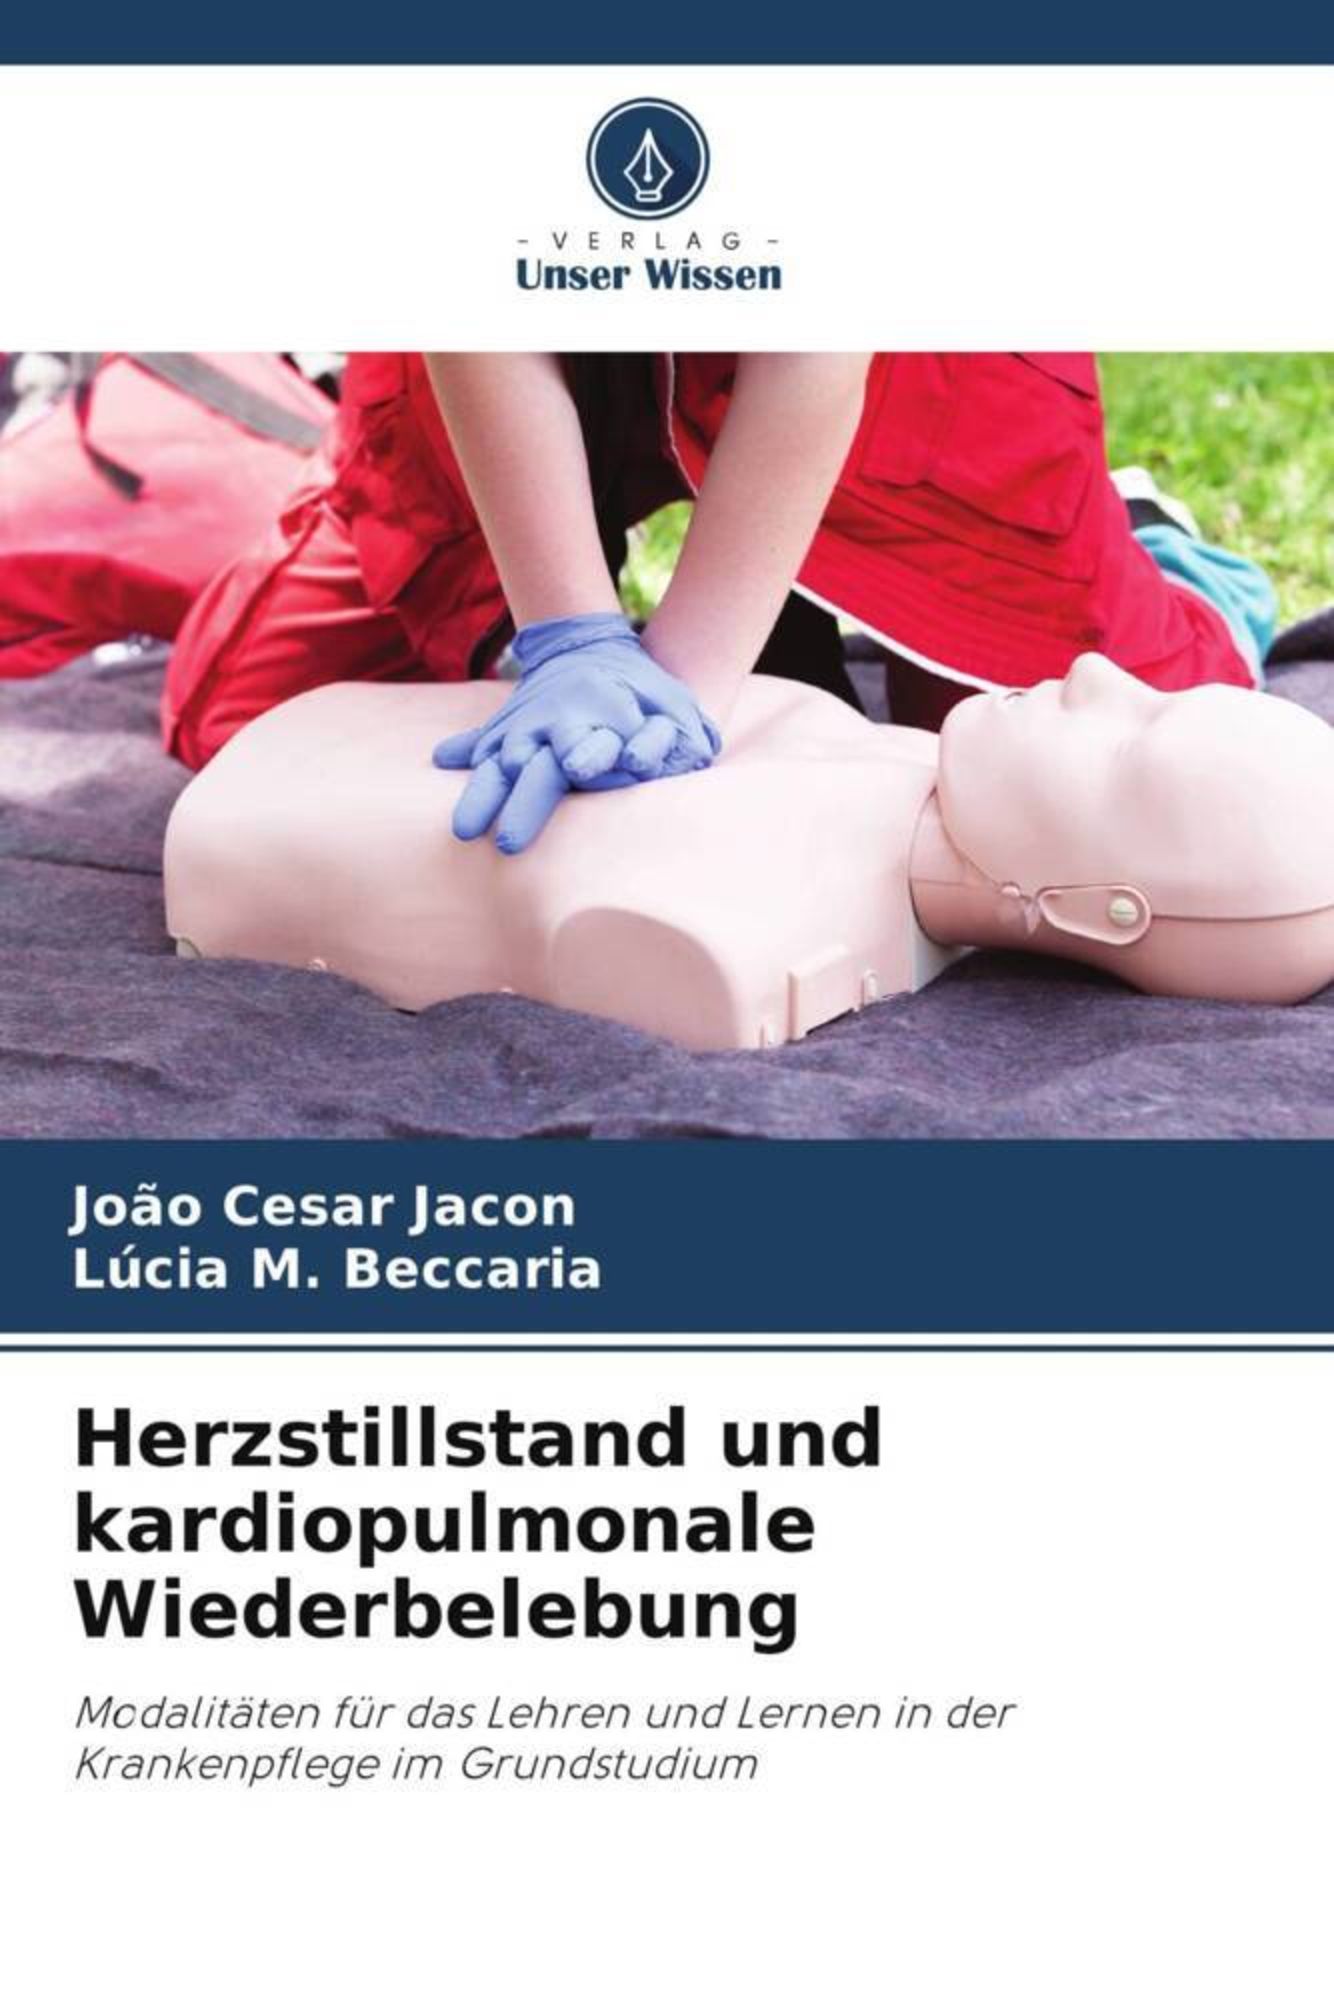 Herzstillstand und kardiopulmonale Wiederbelebung' von 'João Cesar Jacon' -  Buch - '978-620-6-21645-2